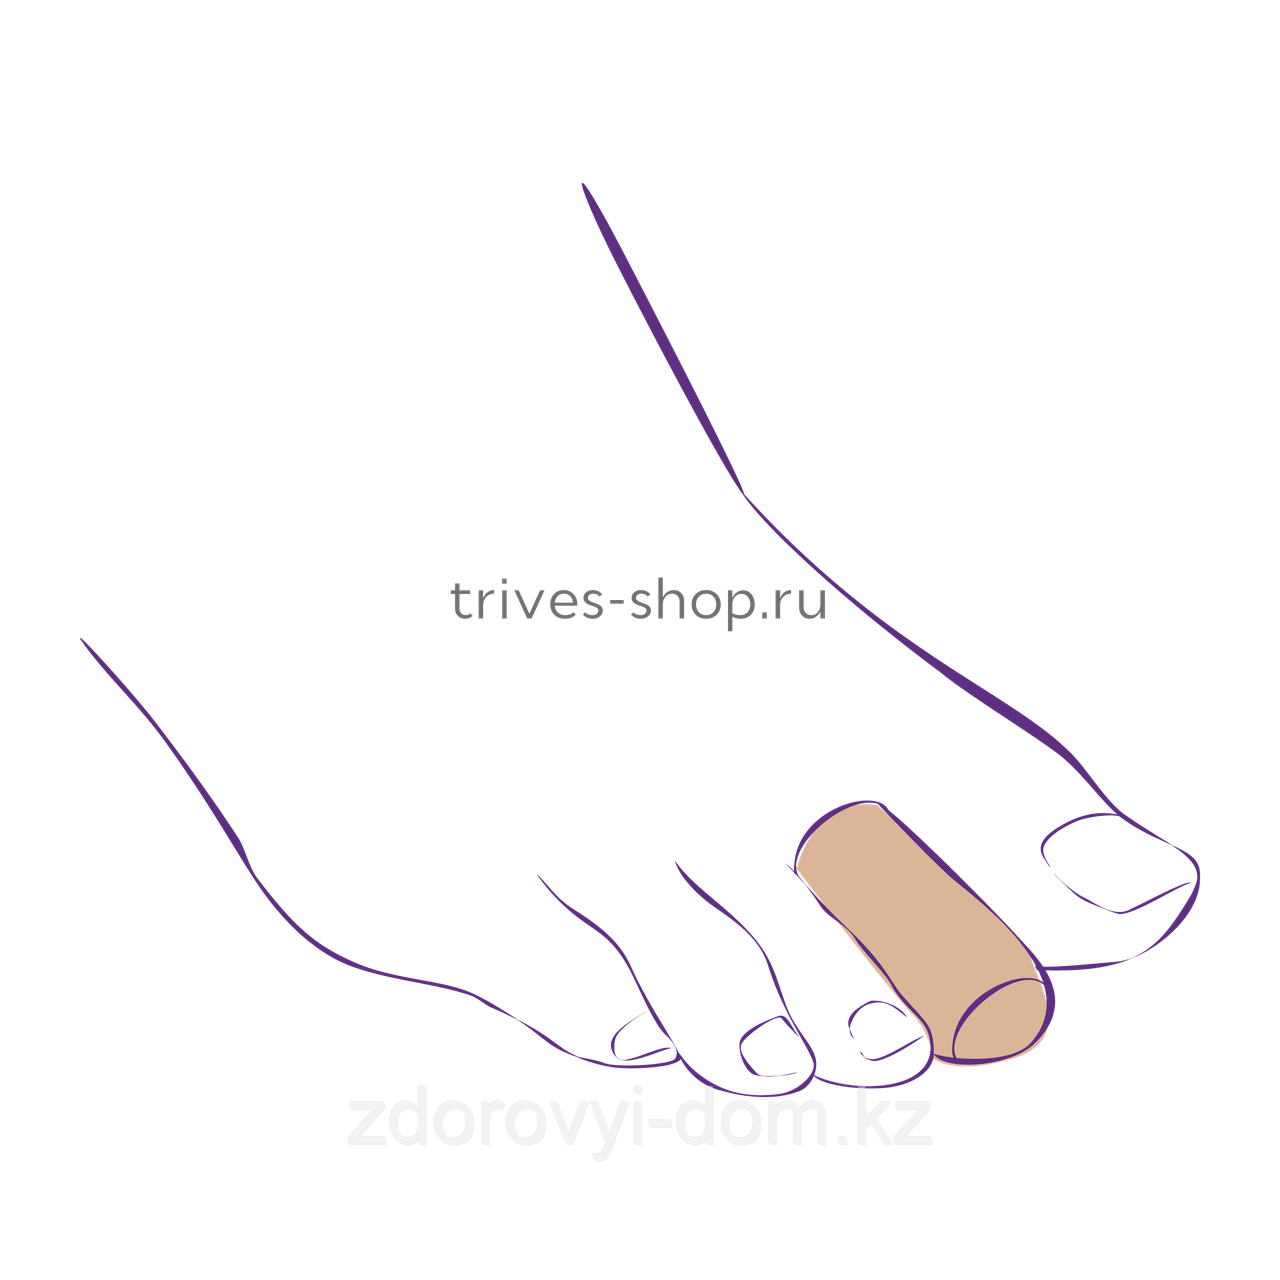 Защитный колпачок для пальцев с тканевым покрытием СТ-66